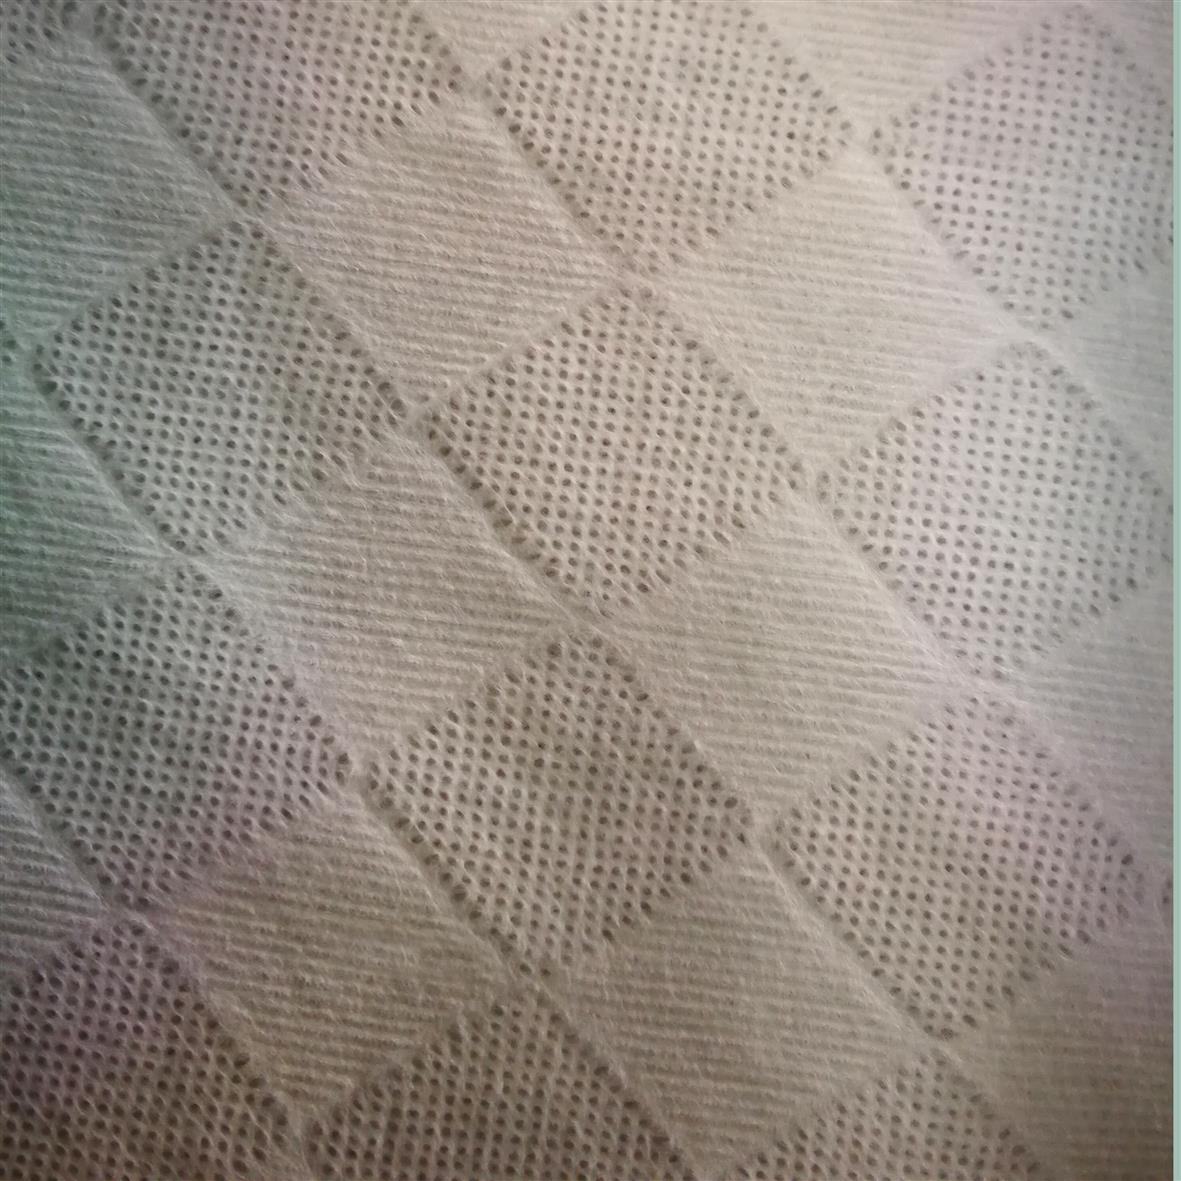 竹纤维美容水刺布生产厂家 竹纤维珍珠纹湿巾布 水刺布